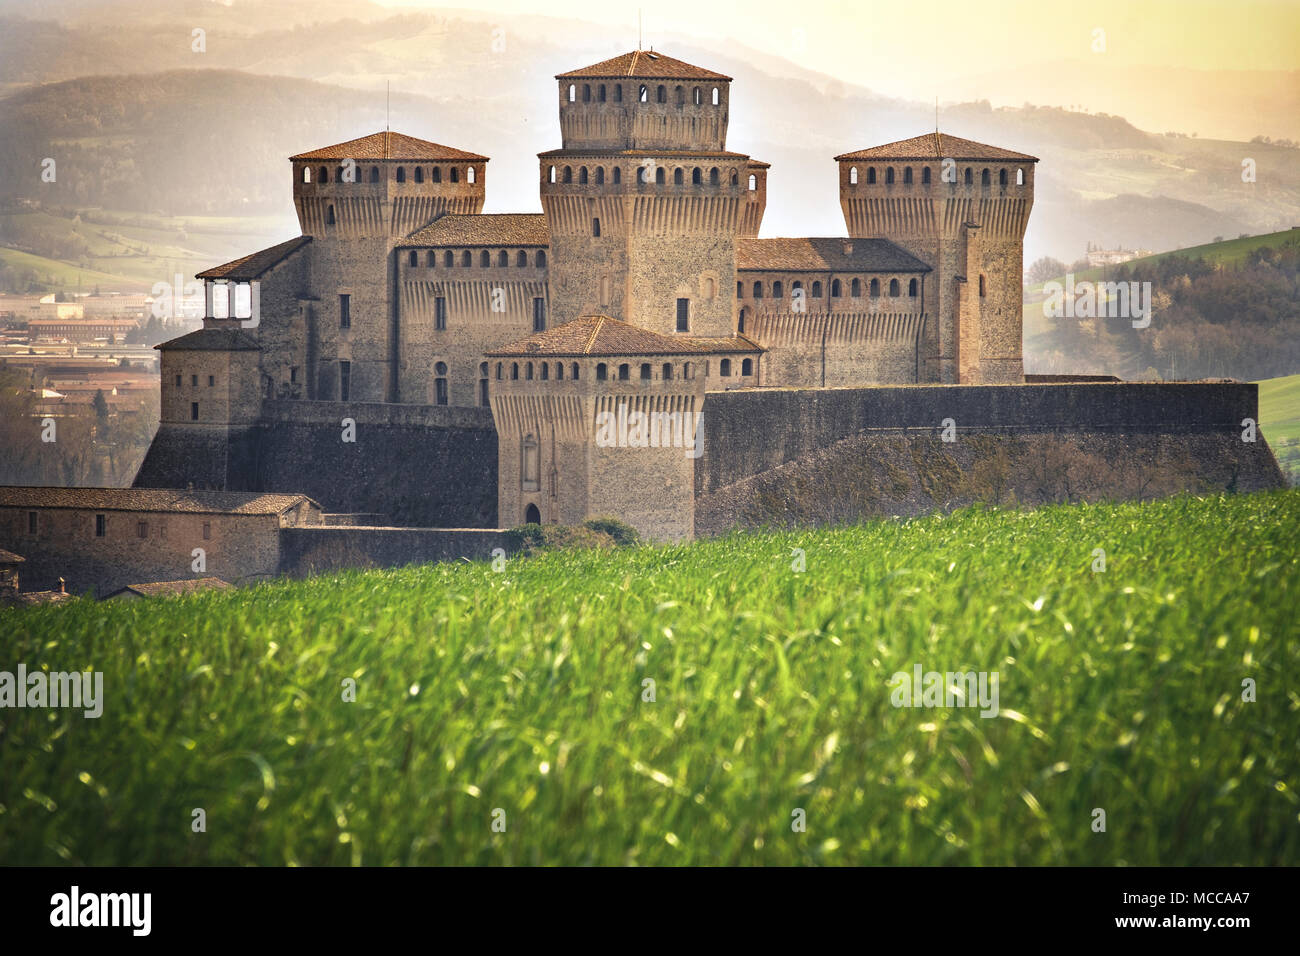 Parma - Italien - Schloss von Torrechiara Wiese vale Panorama das verzauberte Land und Fantasy Einstellung Stockfoto